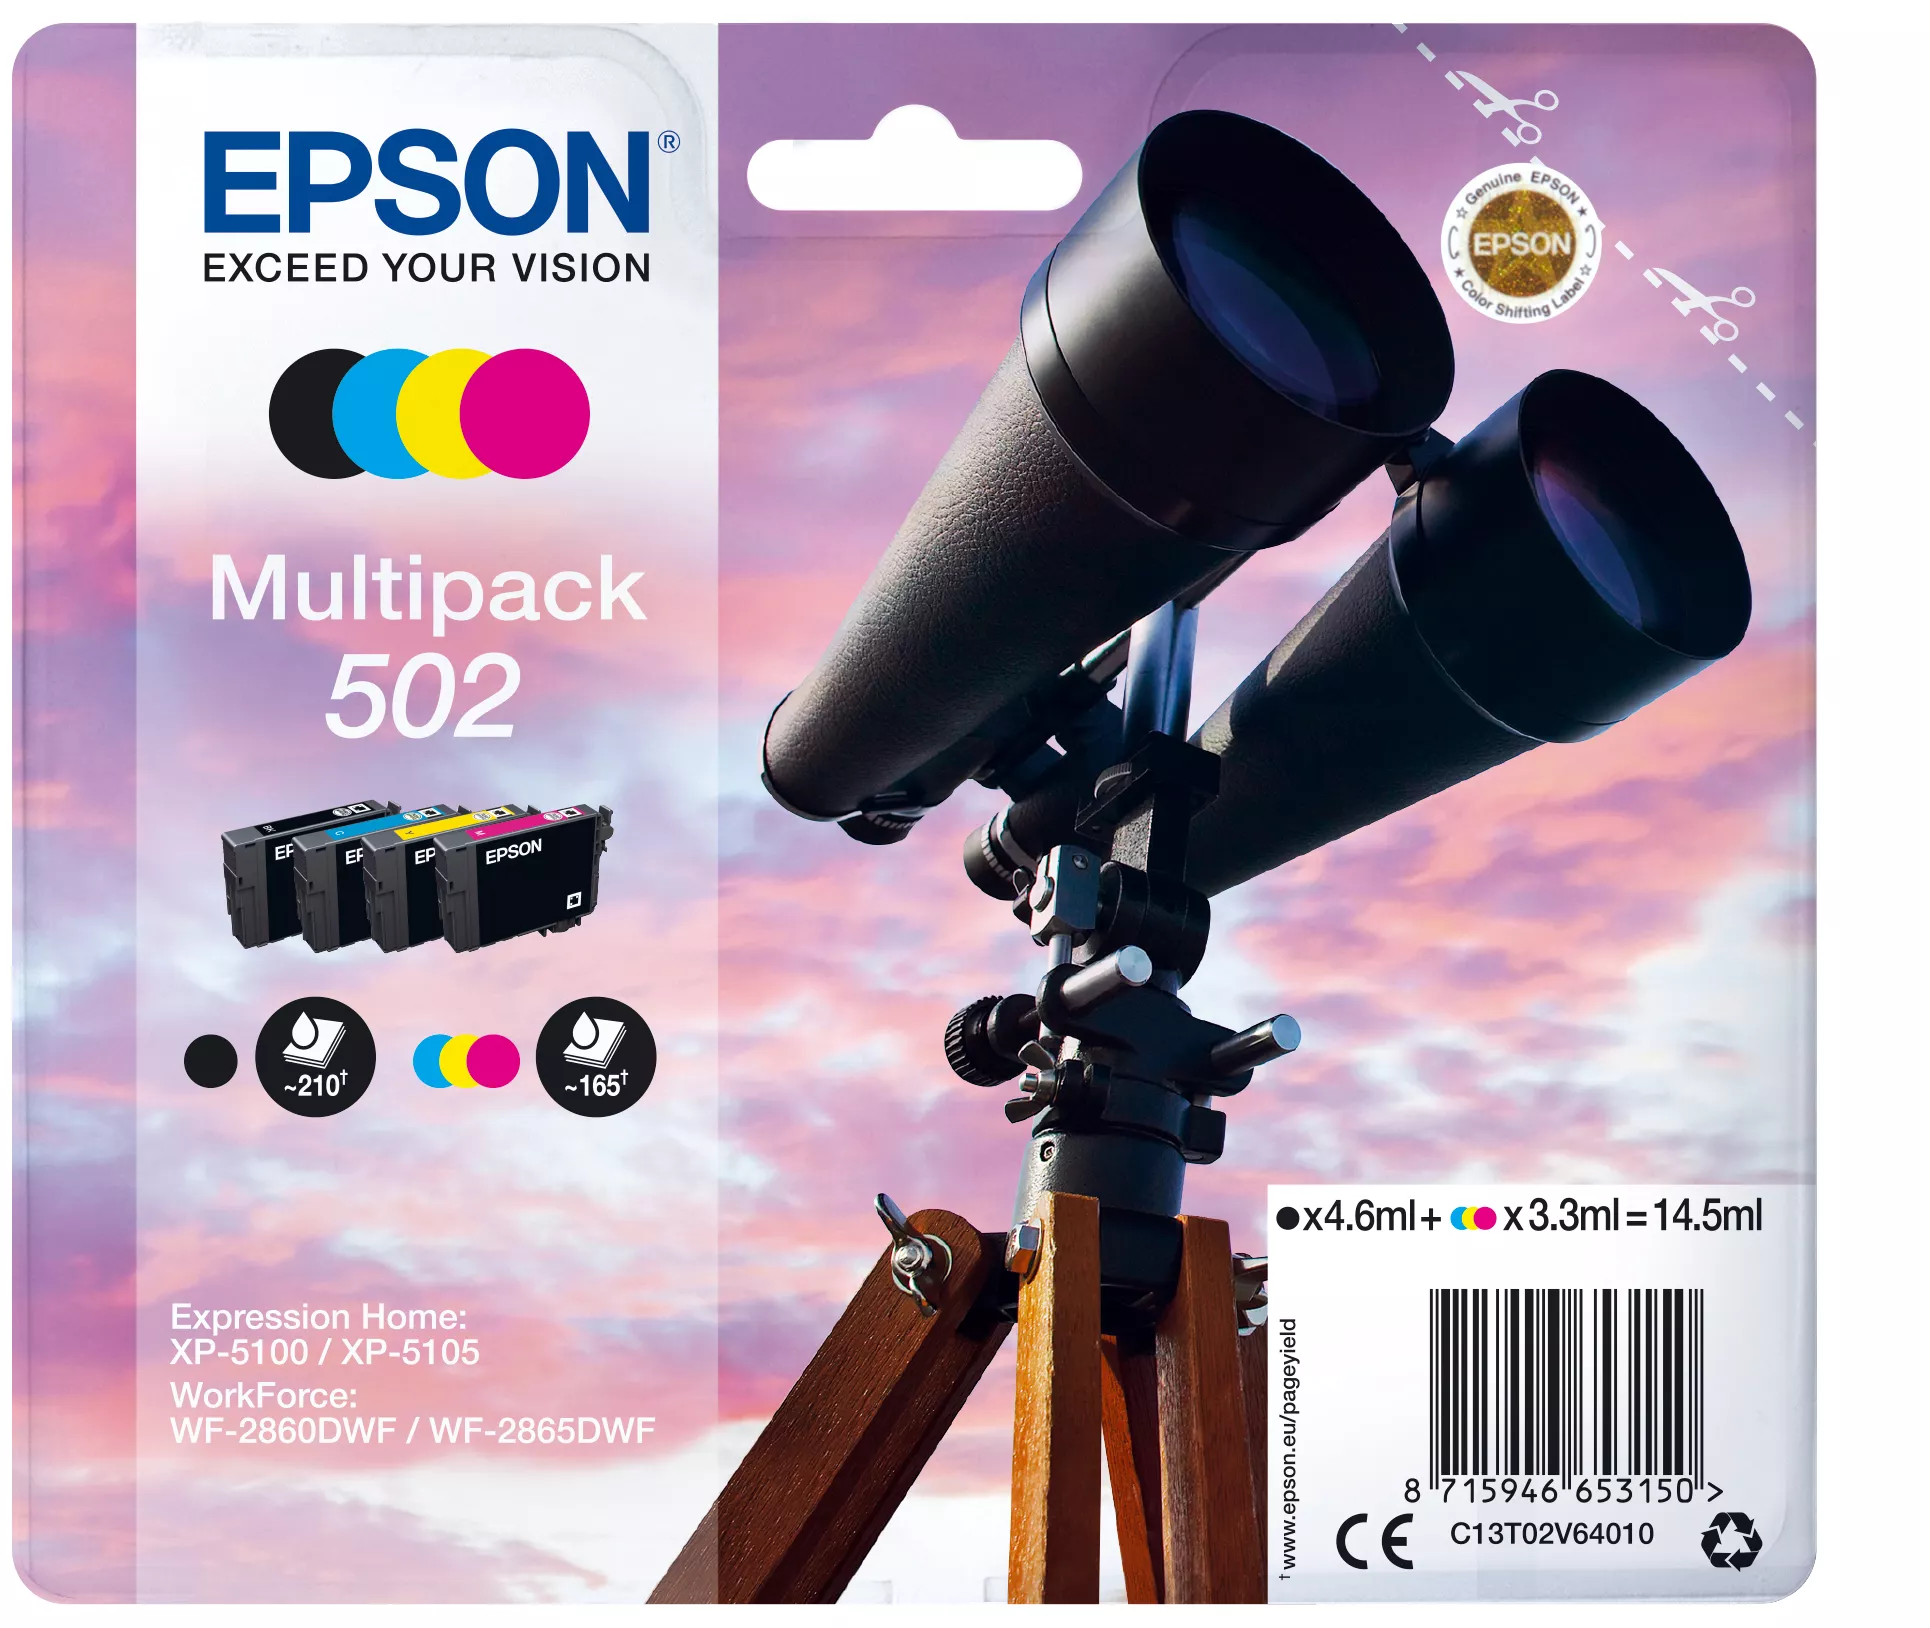 Achat EPSON Multipack 4-colours 502 Ink sur hello RSE